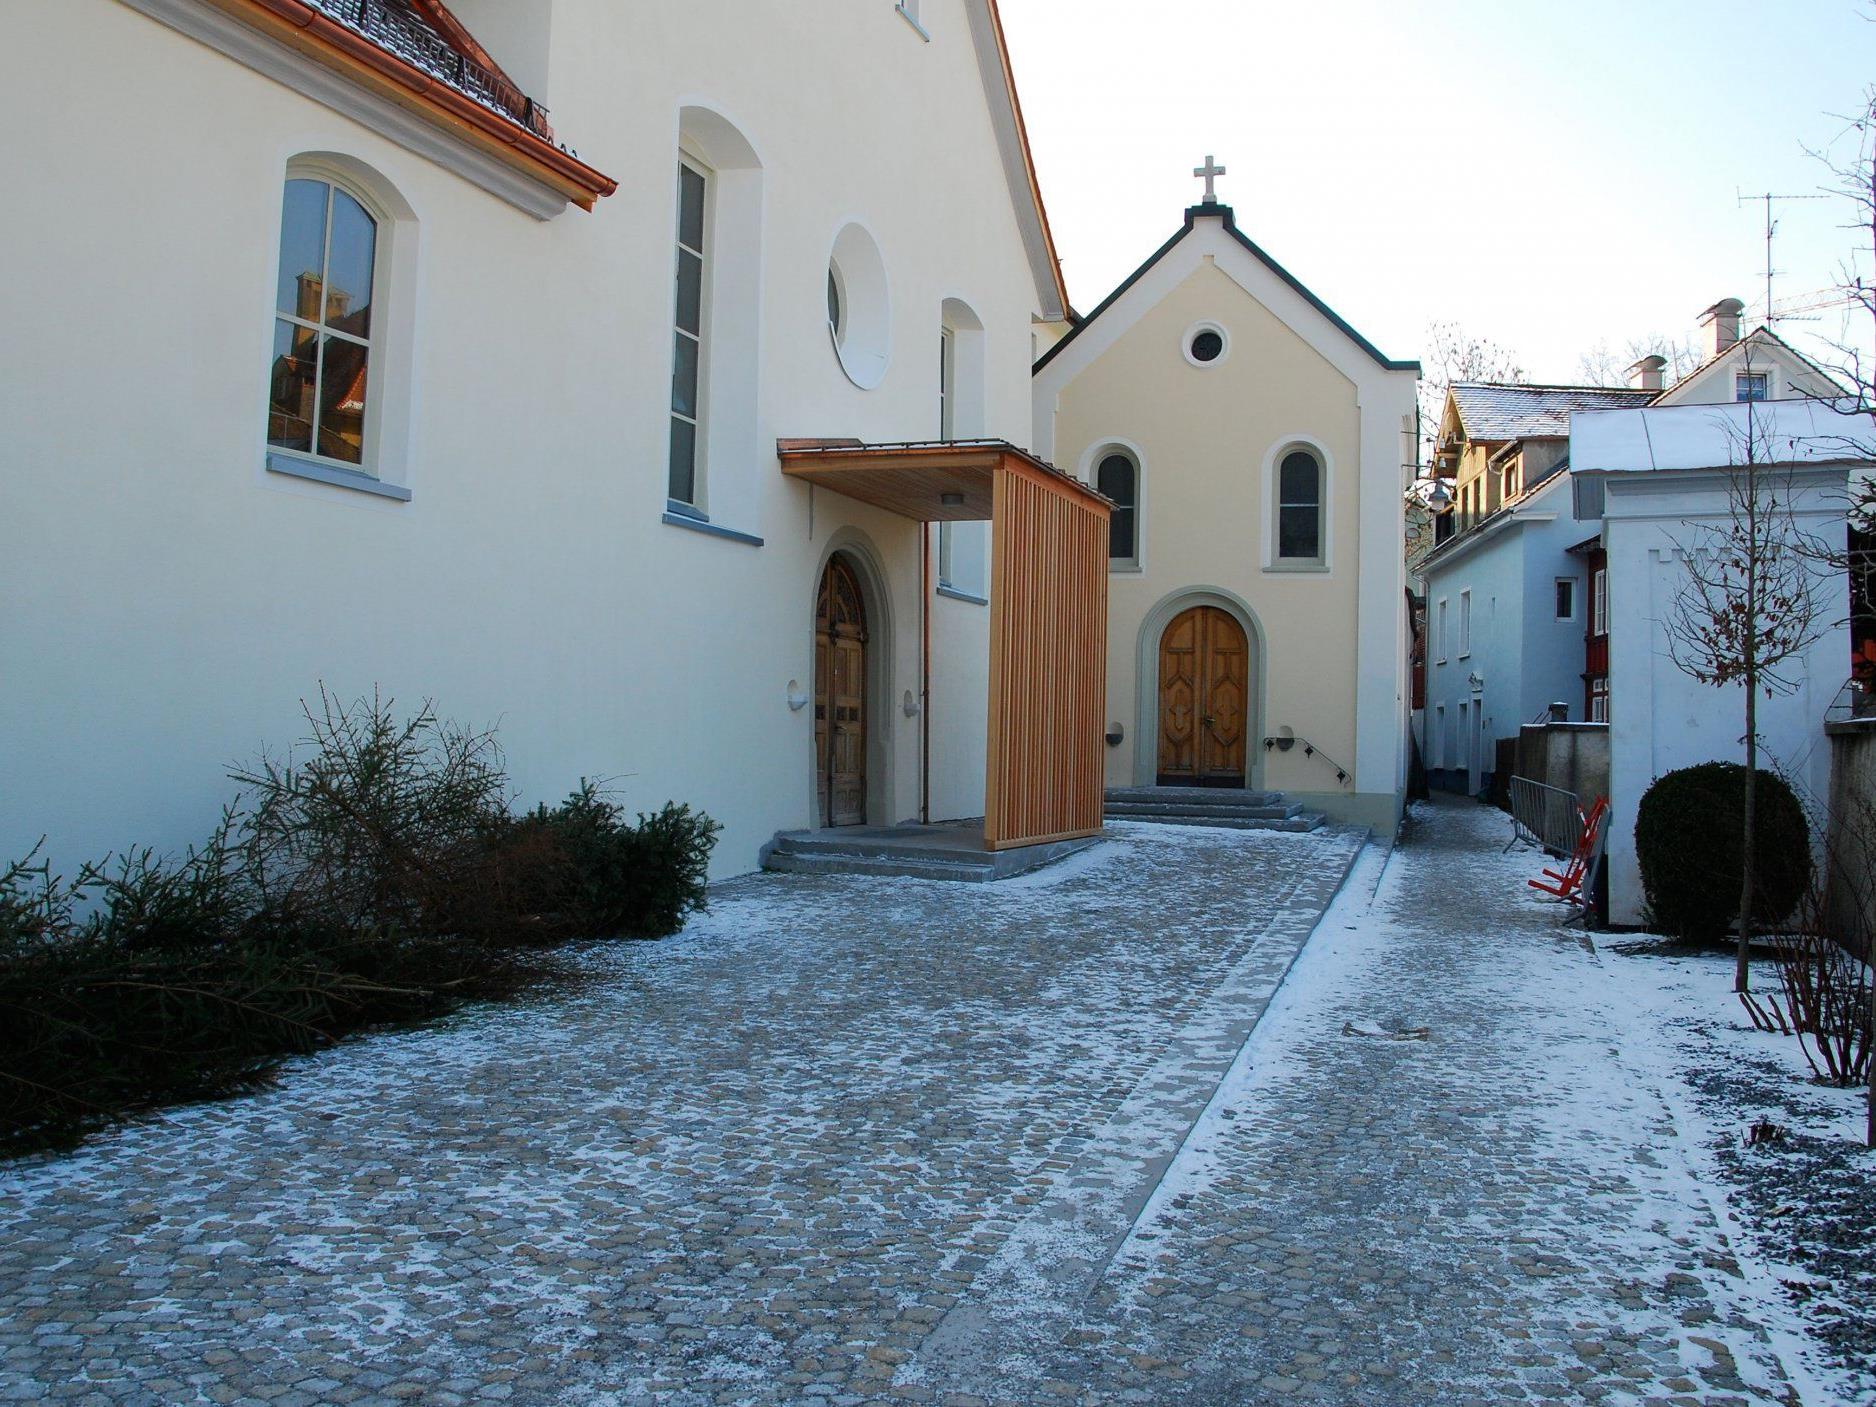 Kirchenplatz mit Lourdes-Kapelle und dem neuen Kirchenentree.